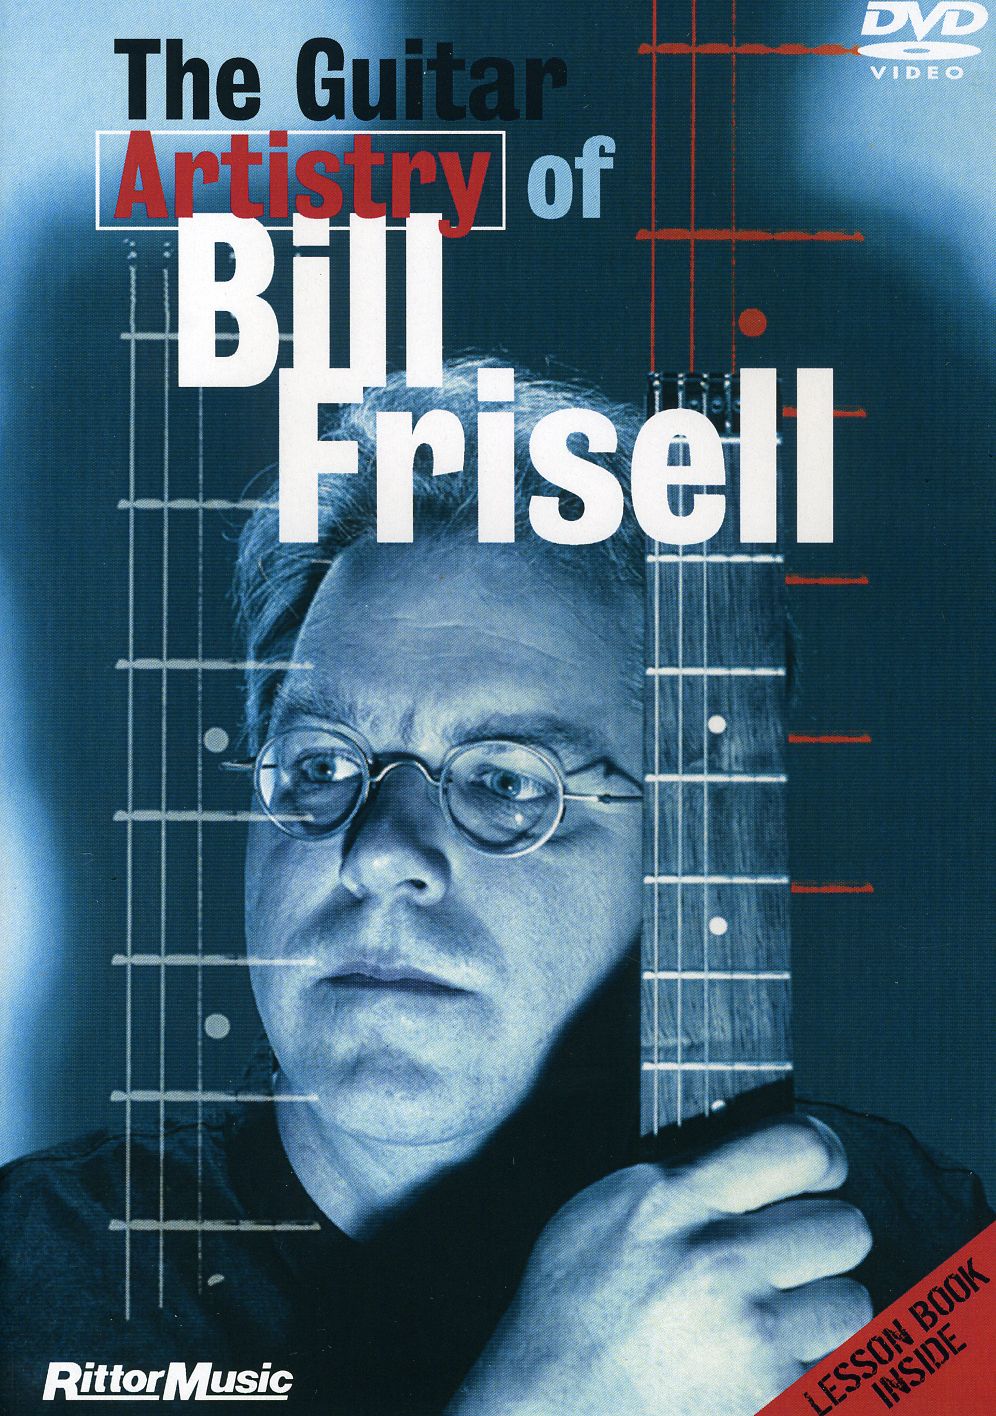 GUITAR ARTISTRY OF BILL FRISELL